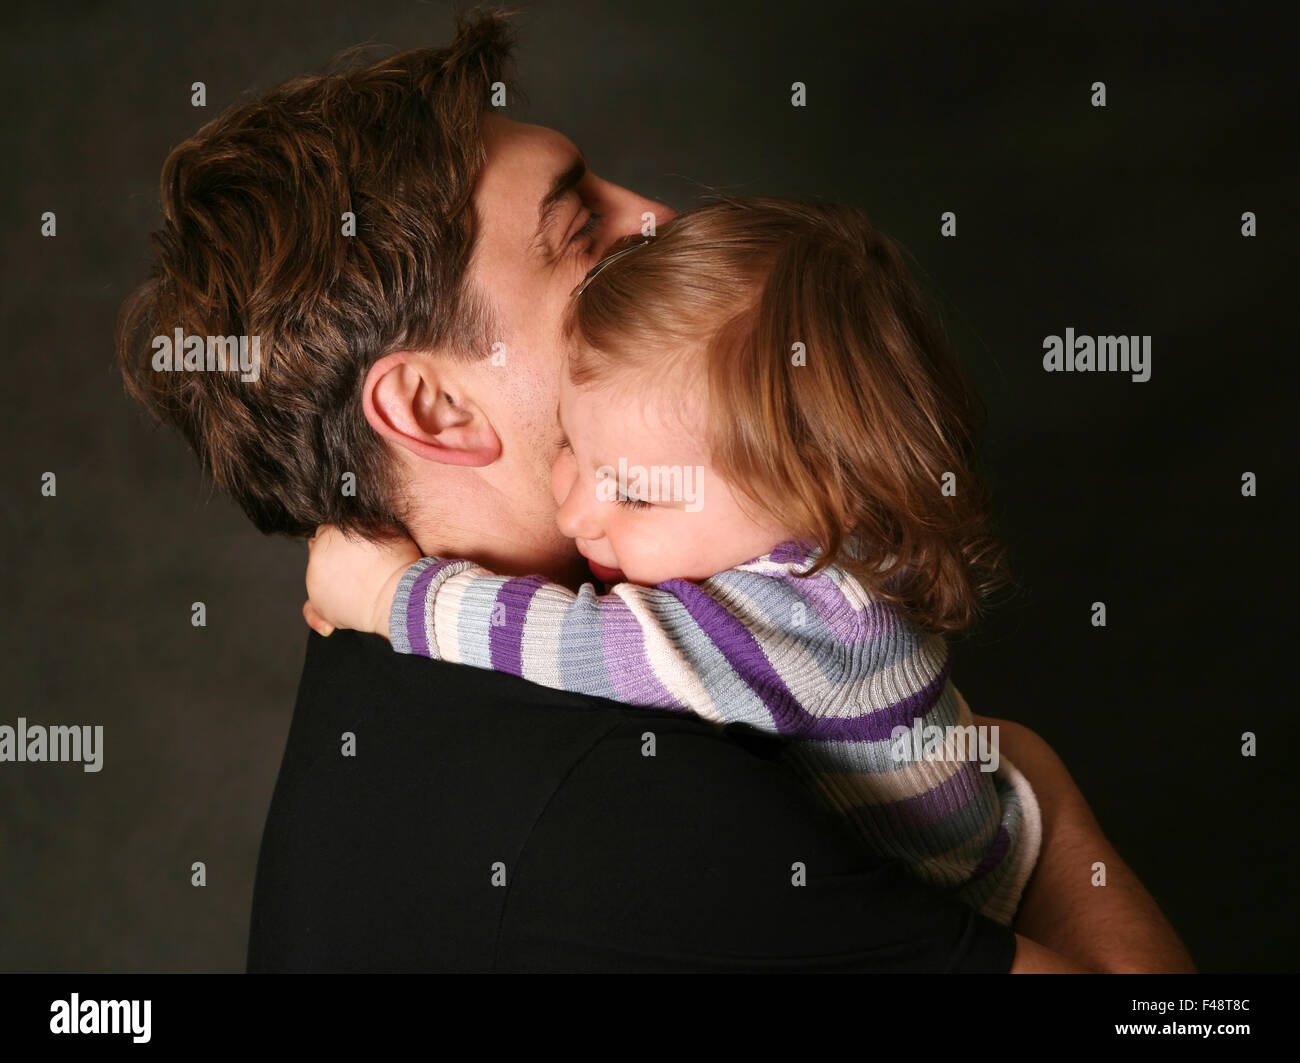 Маму папу обними. Девочка обнимает папу. Папа обнимает дочь. Обнимает ребенка. Отец обнимает ребенка.